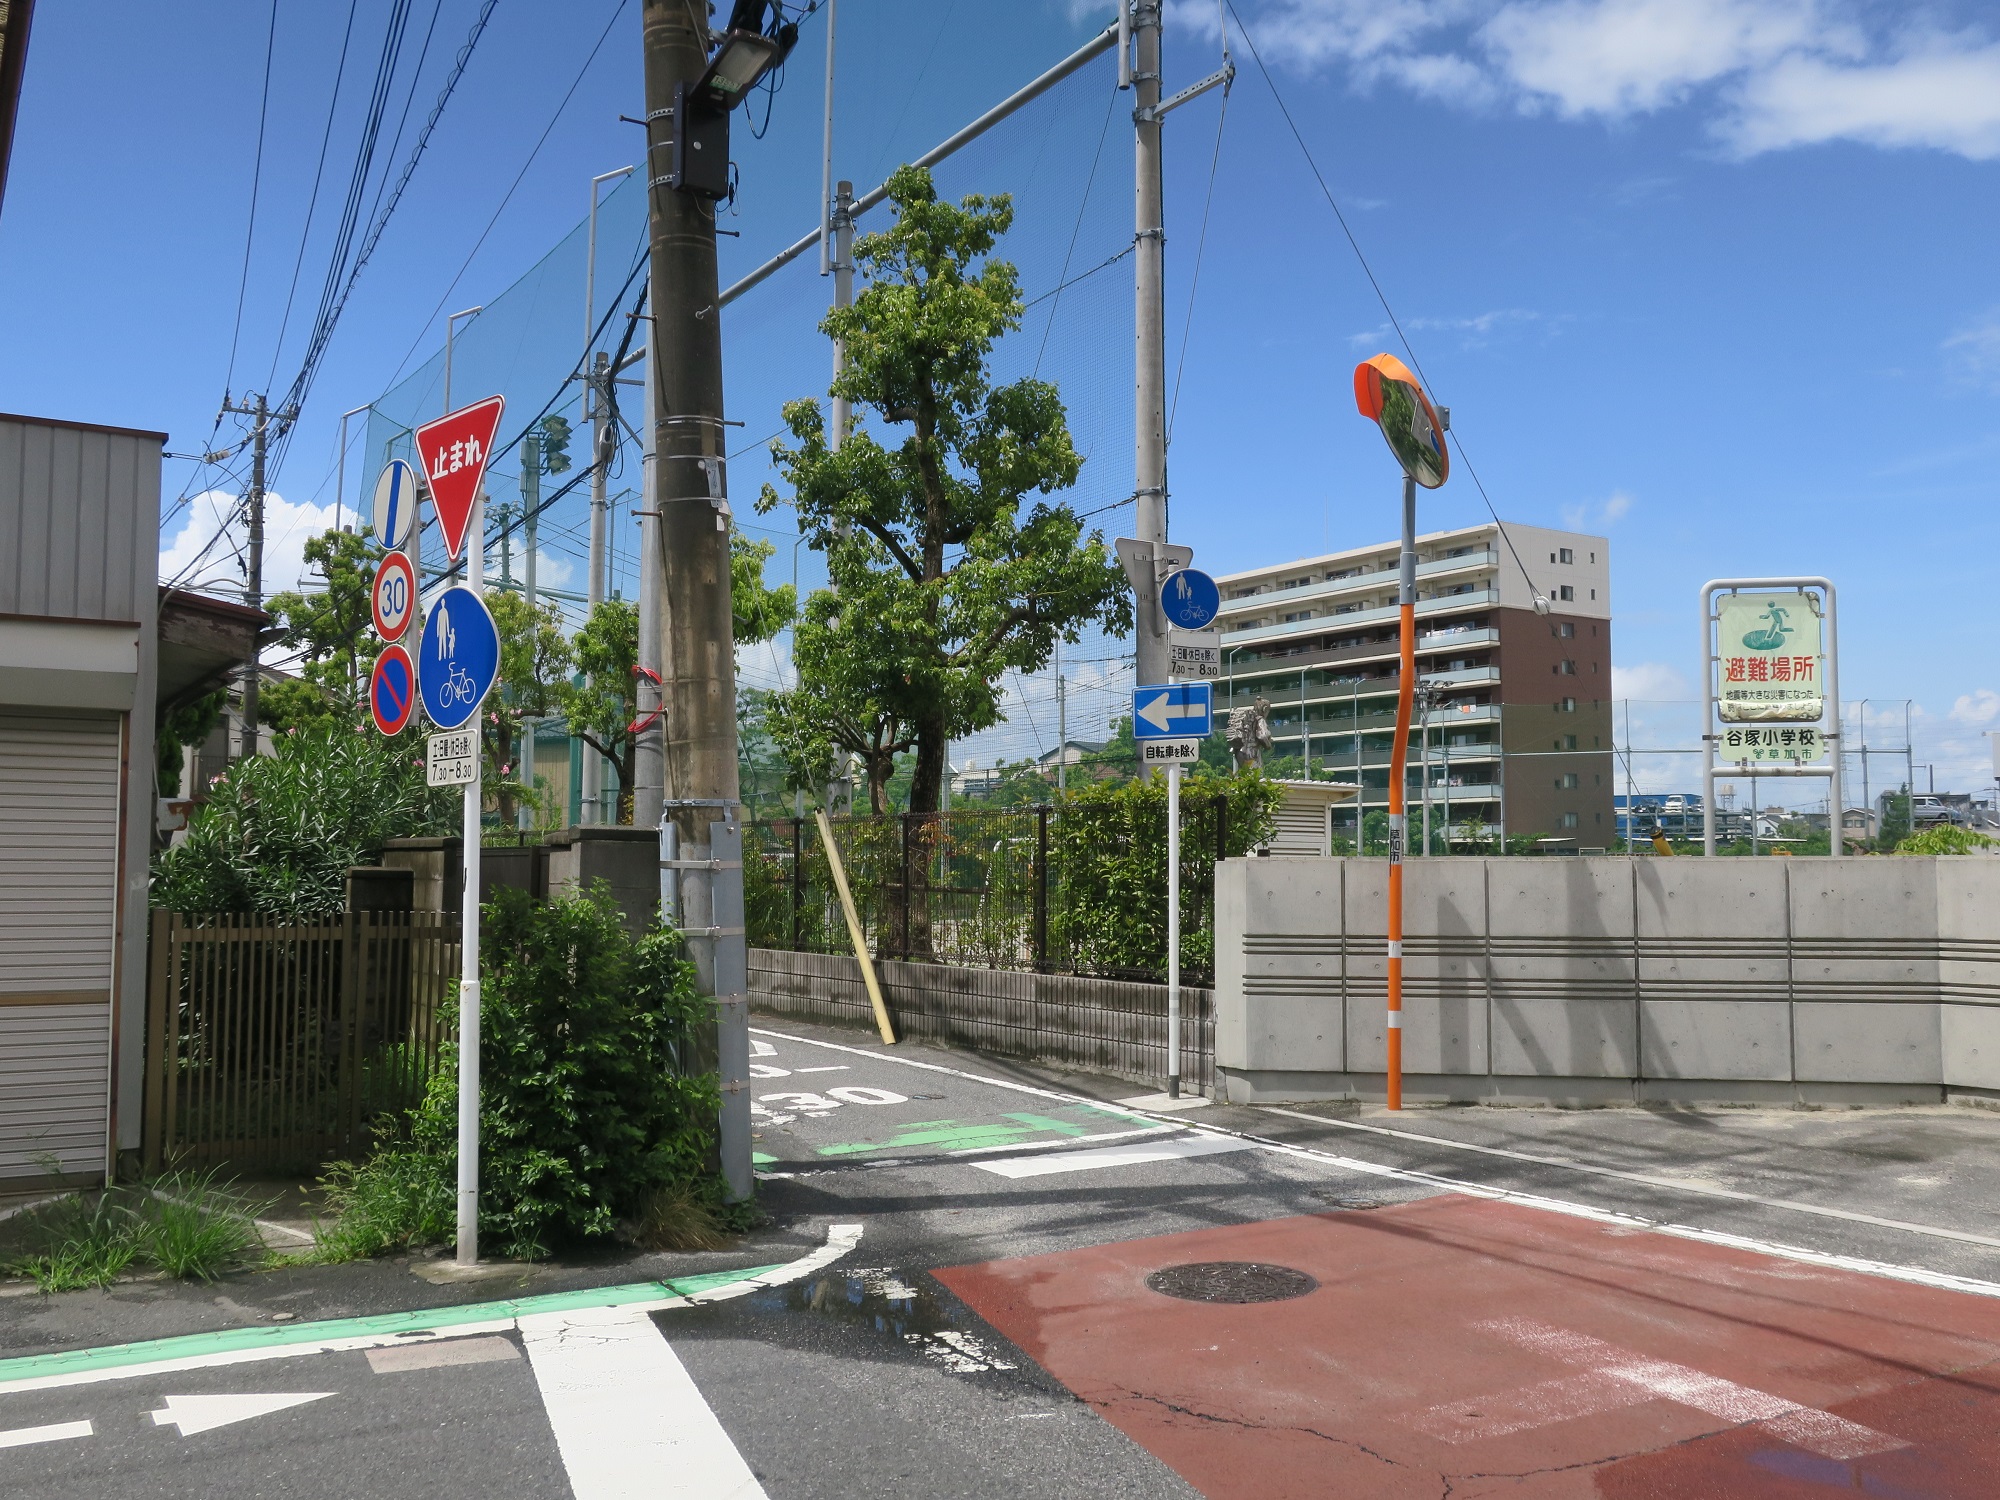 谷塚小学校の脇の道 竜泉寺の湯 草加谷塚店へはこの狭い道を道なりに進みます